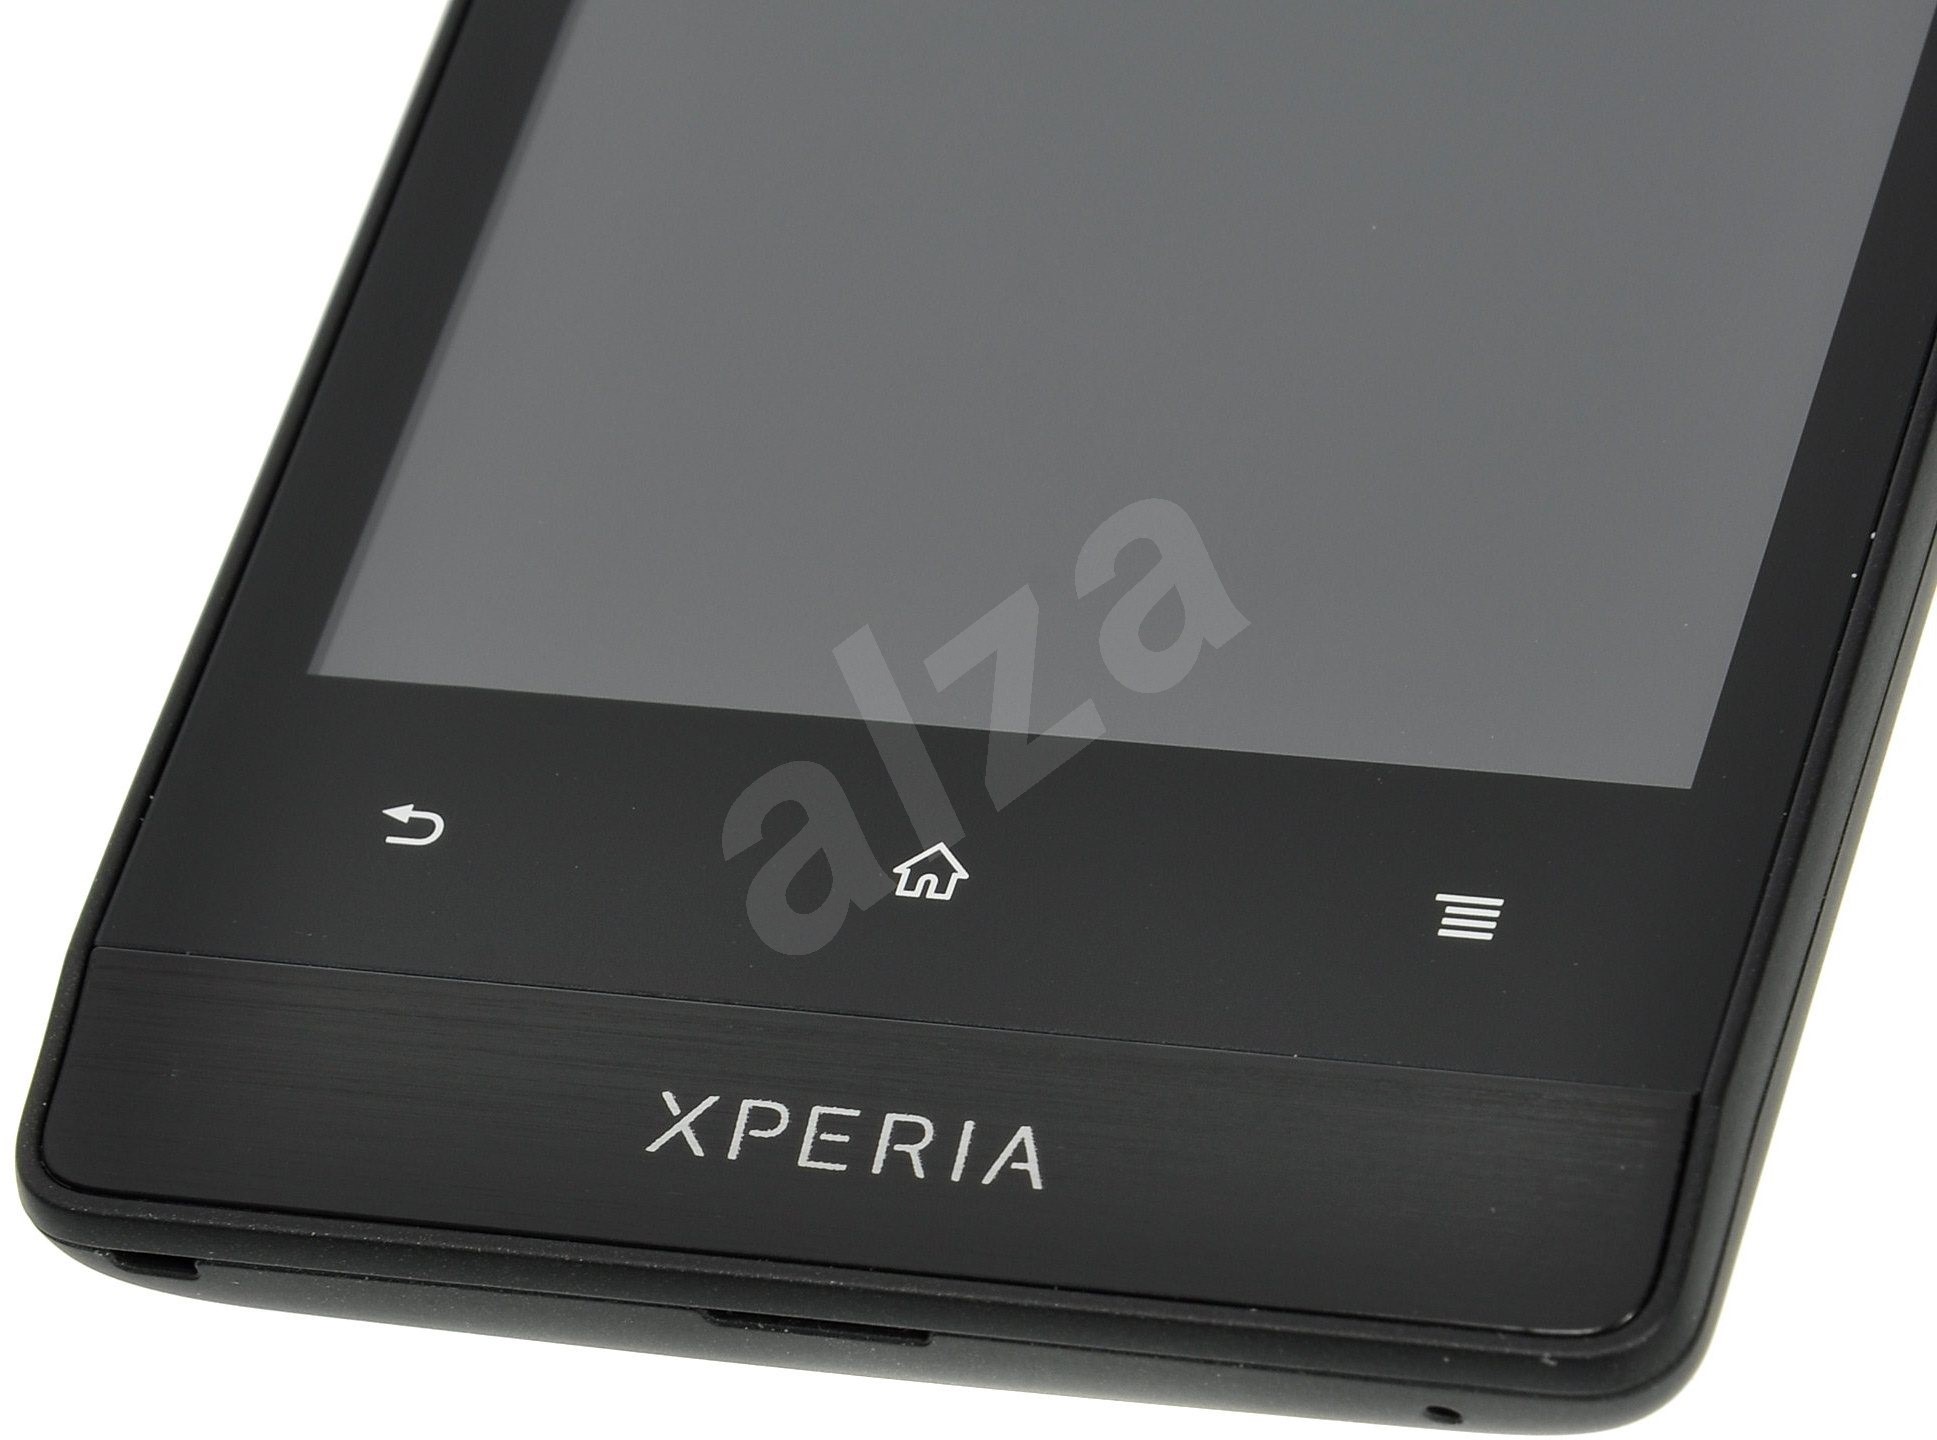 Sony Xperia Miro (ST23i) Black - Mobilný telefón | Alza.sk